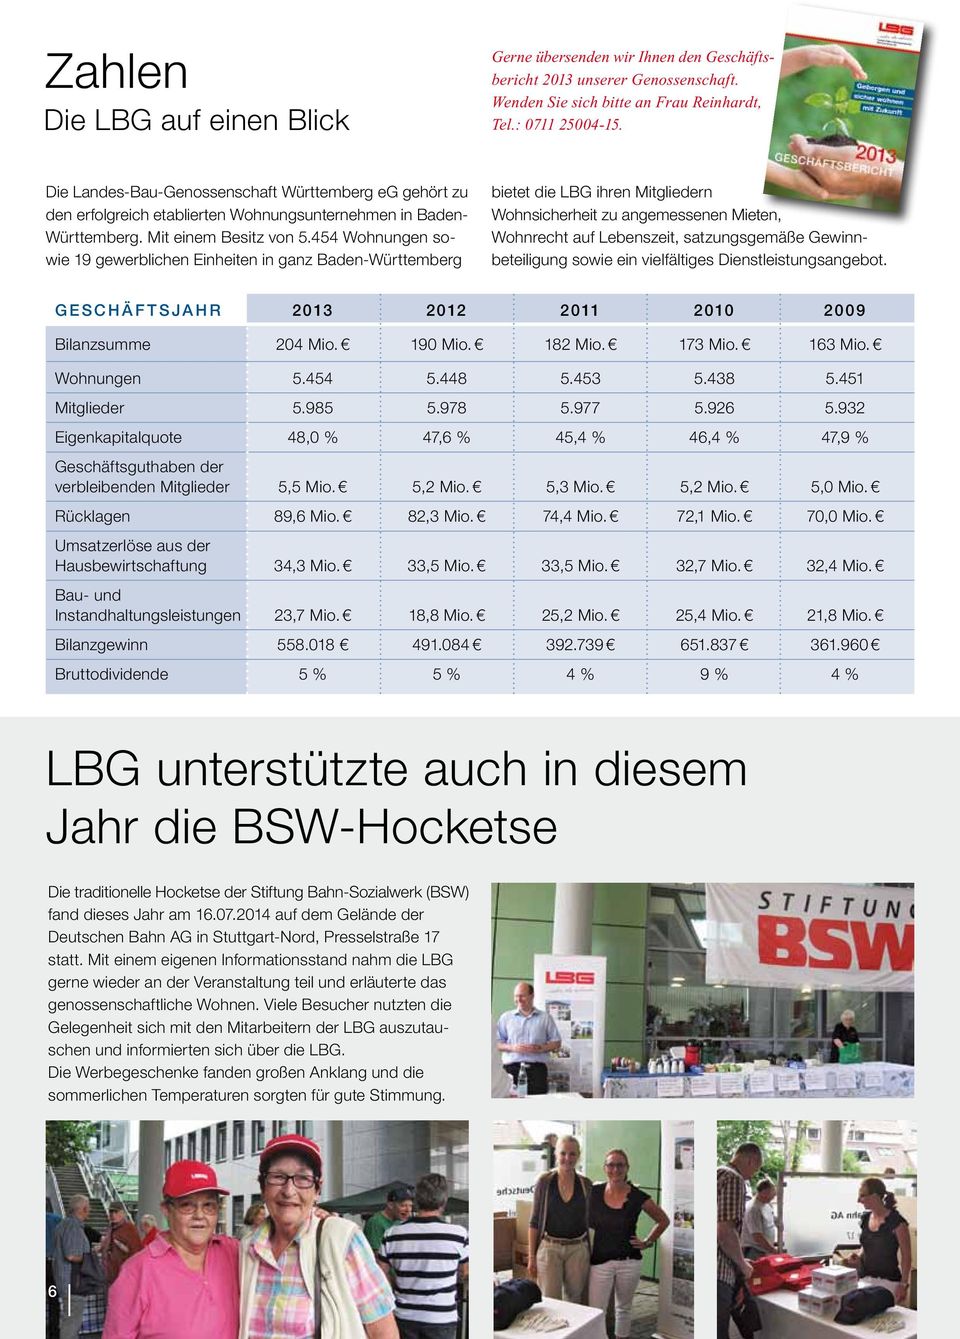 454 Wohnungen sowie 19 gewerblichen Einheiten in ganz Baden-Württemberg bietet die LBG ihren Mitgliedern Wohnsicherheit zu angemessenen Mieten, Wohnrecht auf Lebenszeit, satzungsgemäße